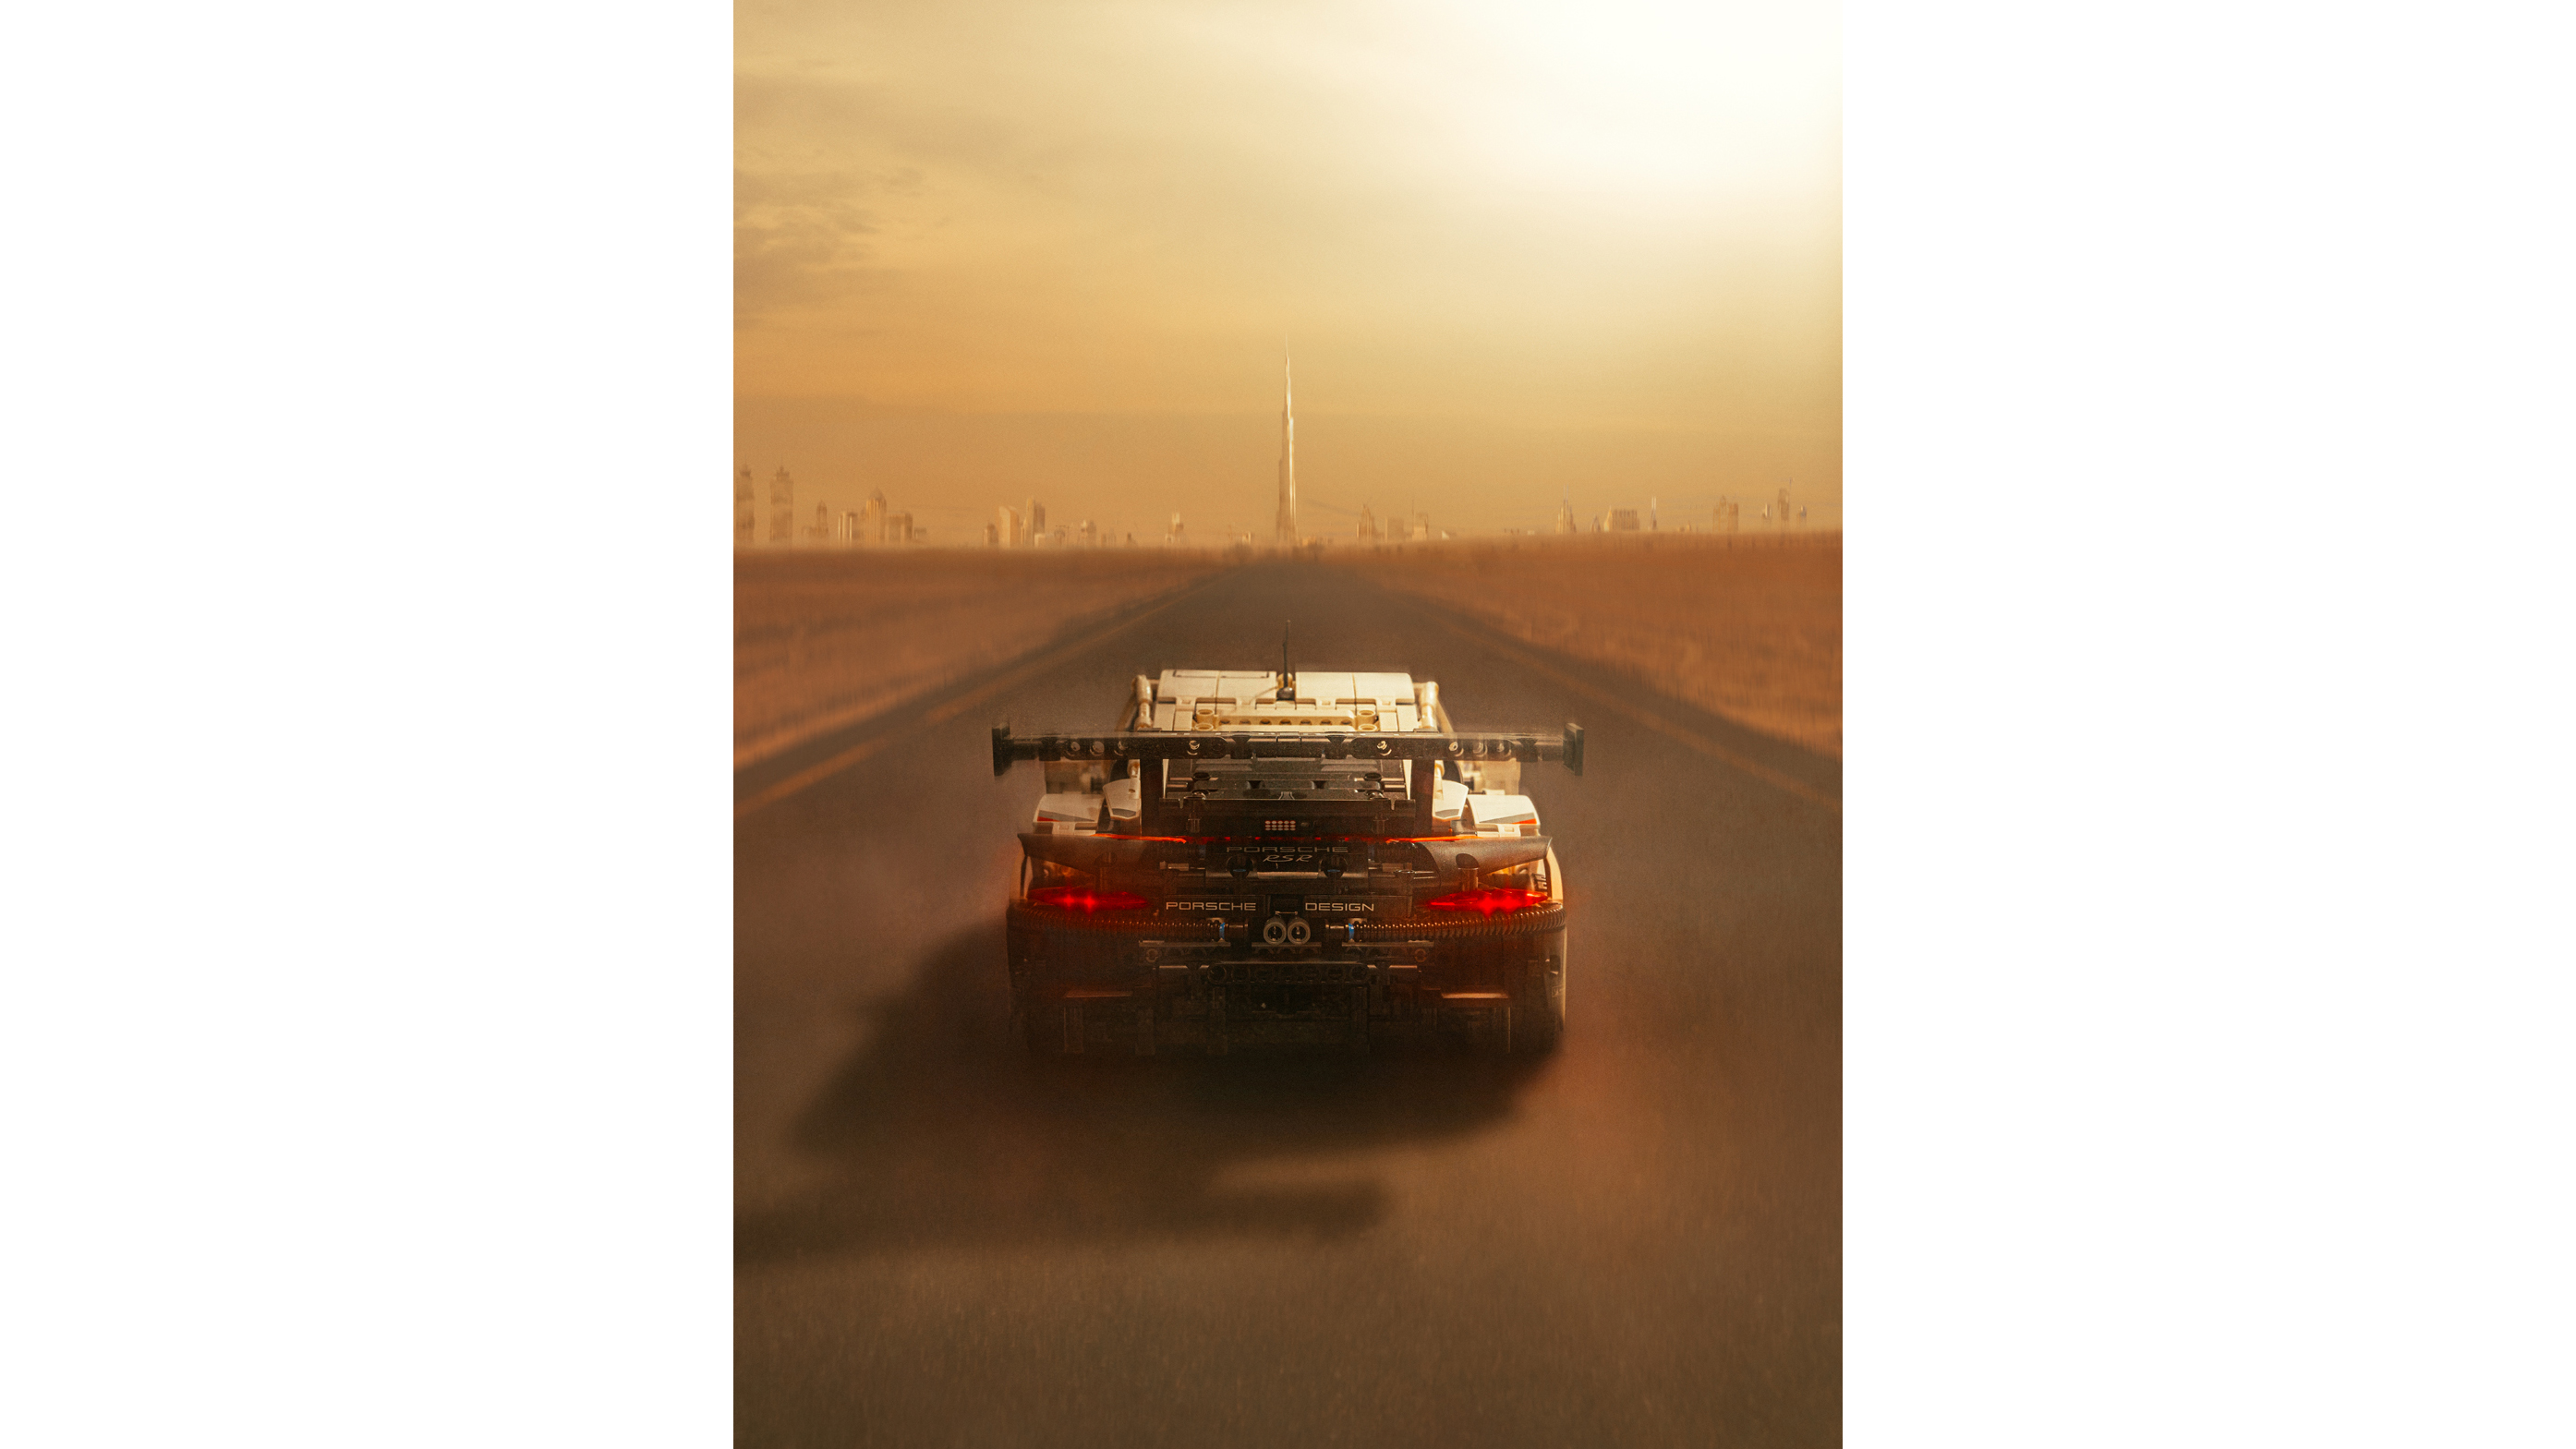 Lego 911 RSR, Dubai, 2020, Porsche AG